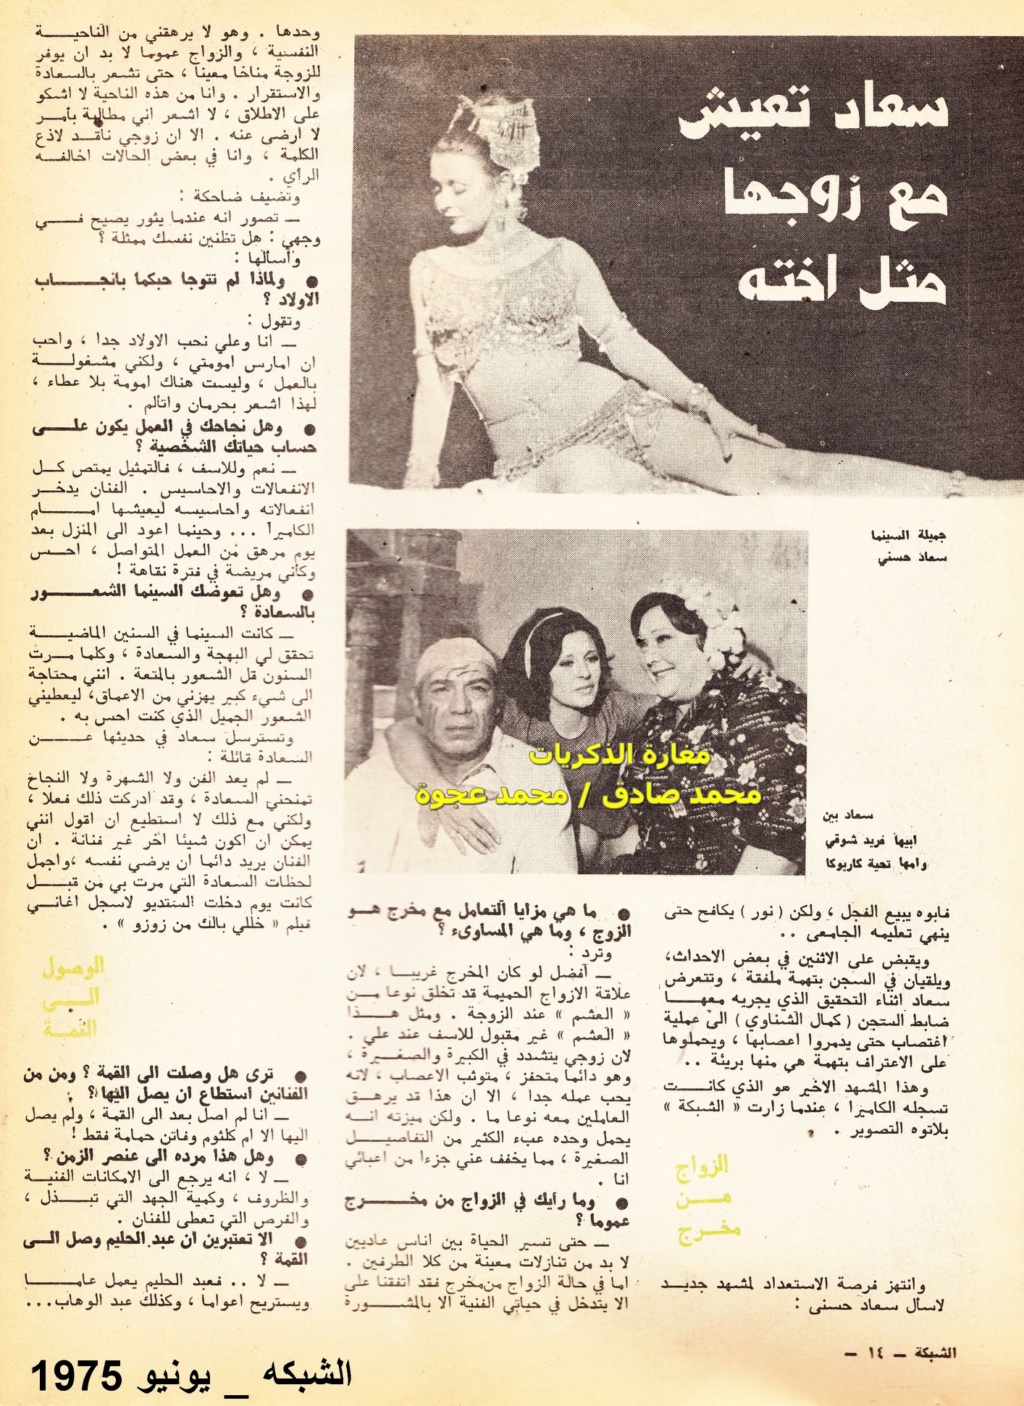 حوار صحفي : اغتصاب سعاد حسني امام زوجها 1975 م 3250